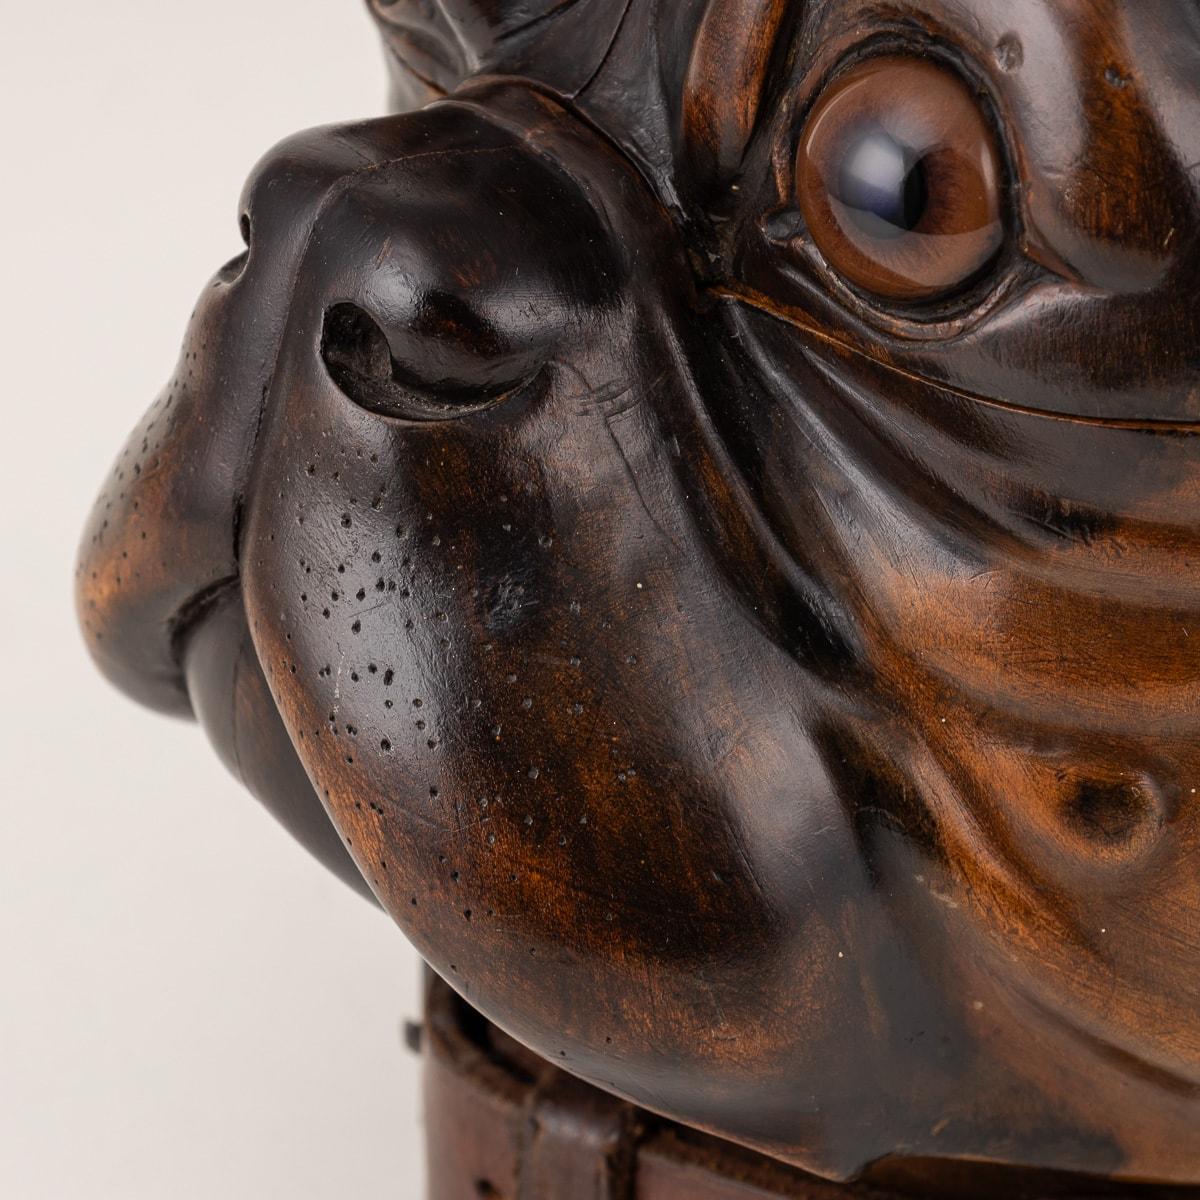 Antique 20th Century Victorian Lignum Vitae Bulldog Tobacco Jar c.1900 For Sale 4